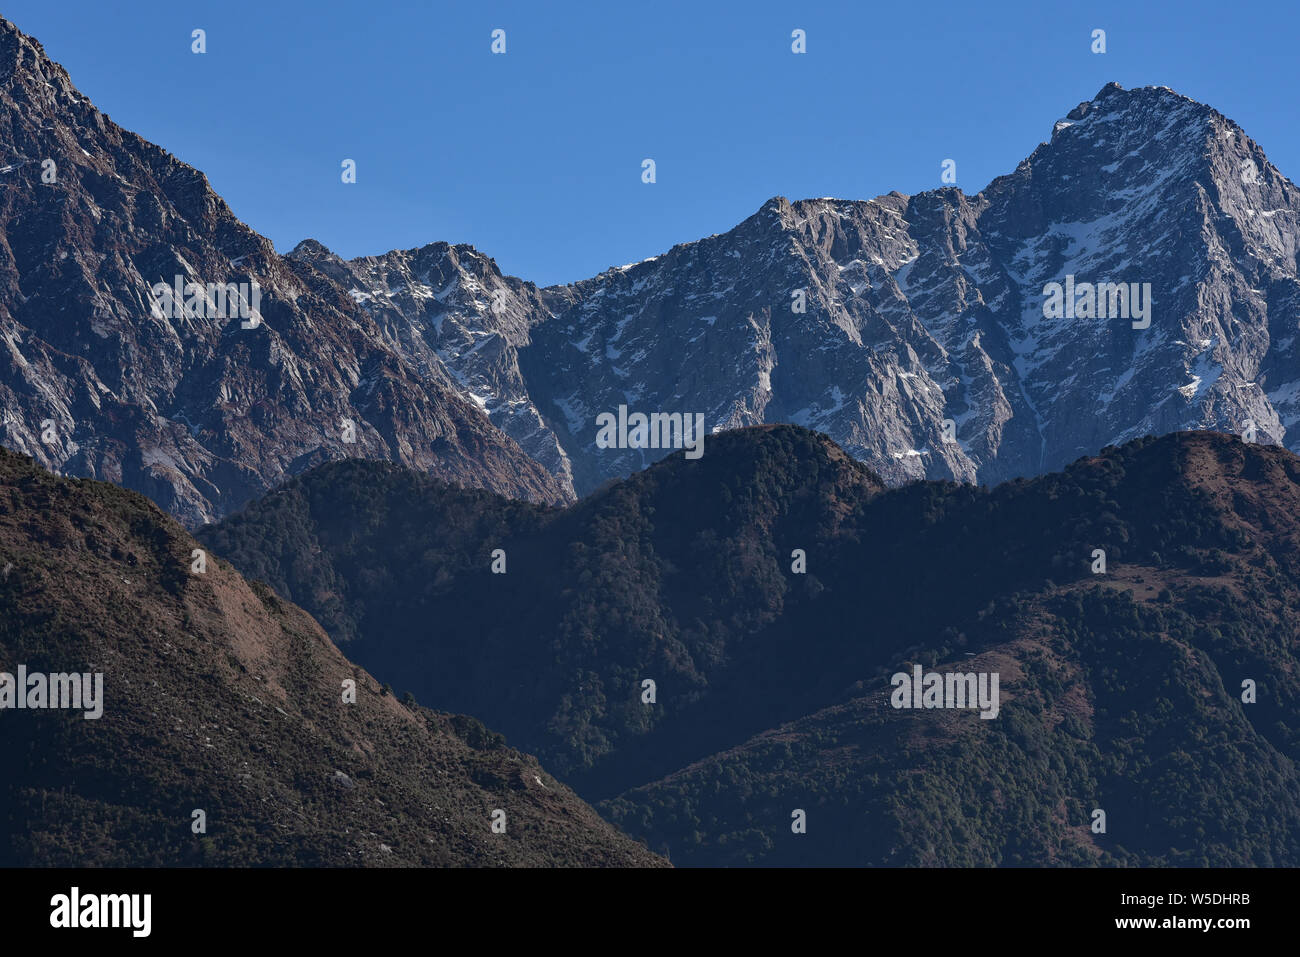 Les spectaculaires pics rocheux de la gamme Dhauladhar, partie de la partie inférieure de l'Himalaya, McLeodganj, district Kangra, Himachal Pradesh, Inde du Nord, en Asie. Banque D'Images